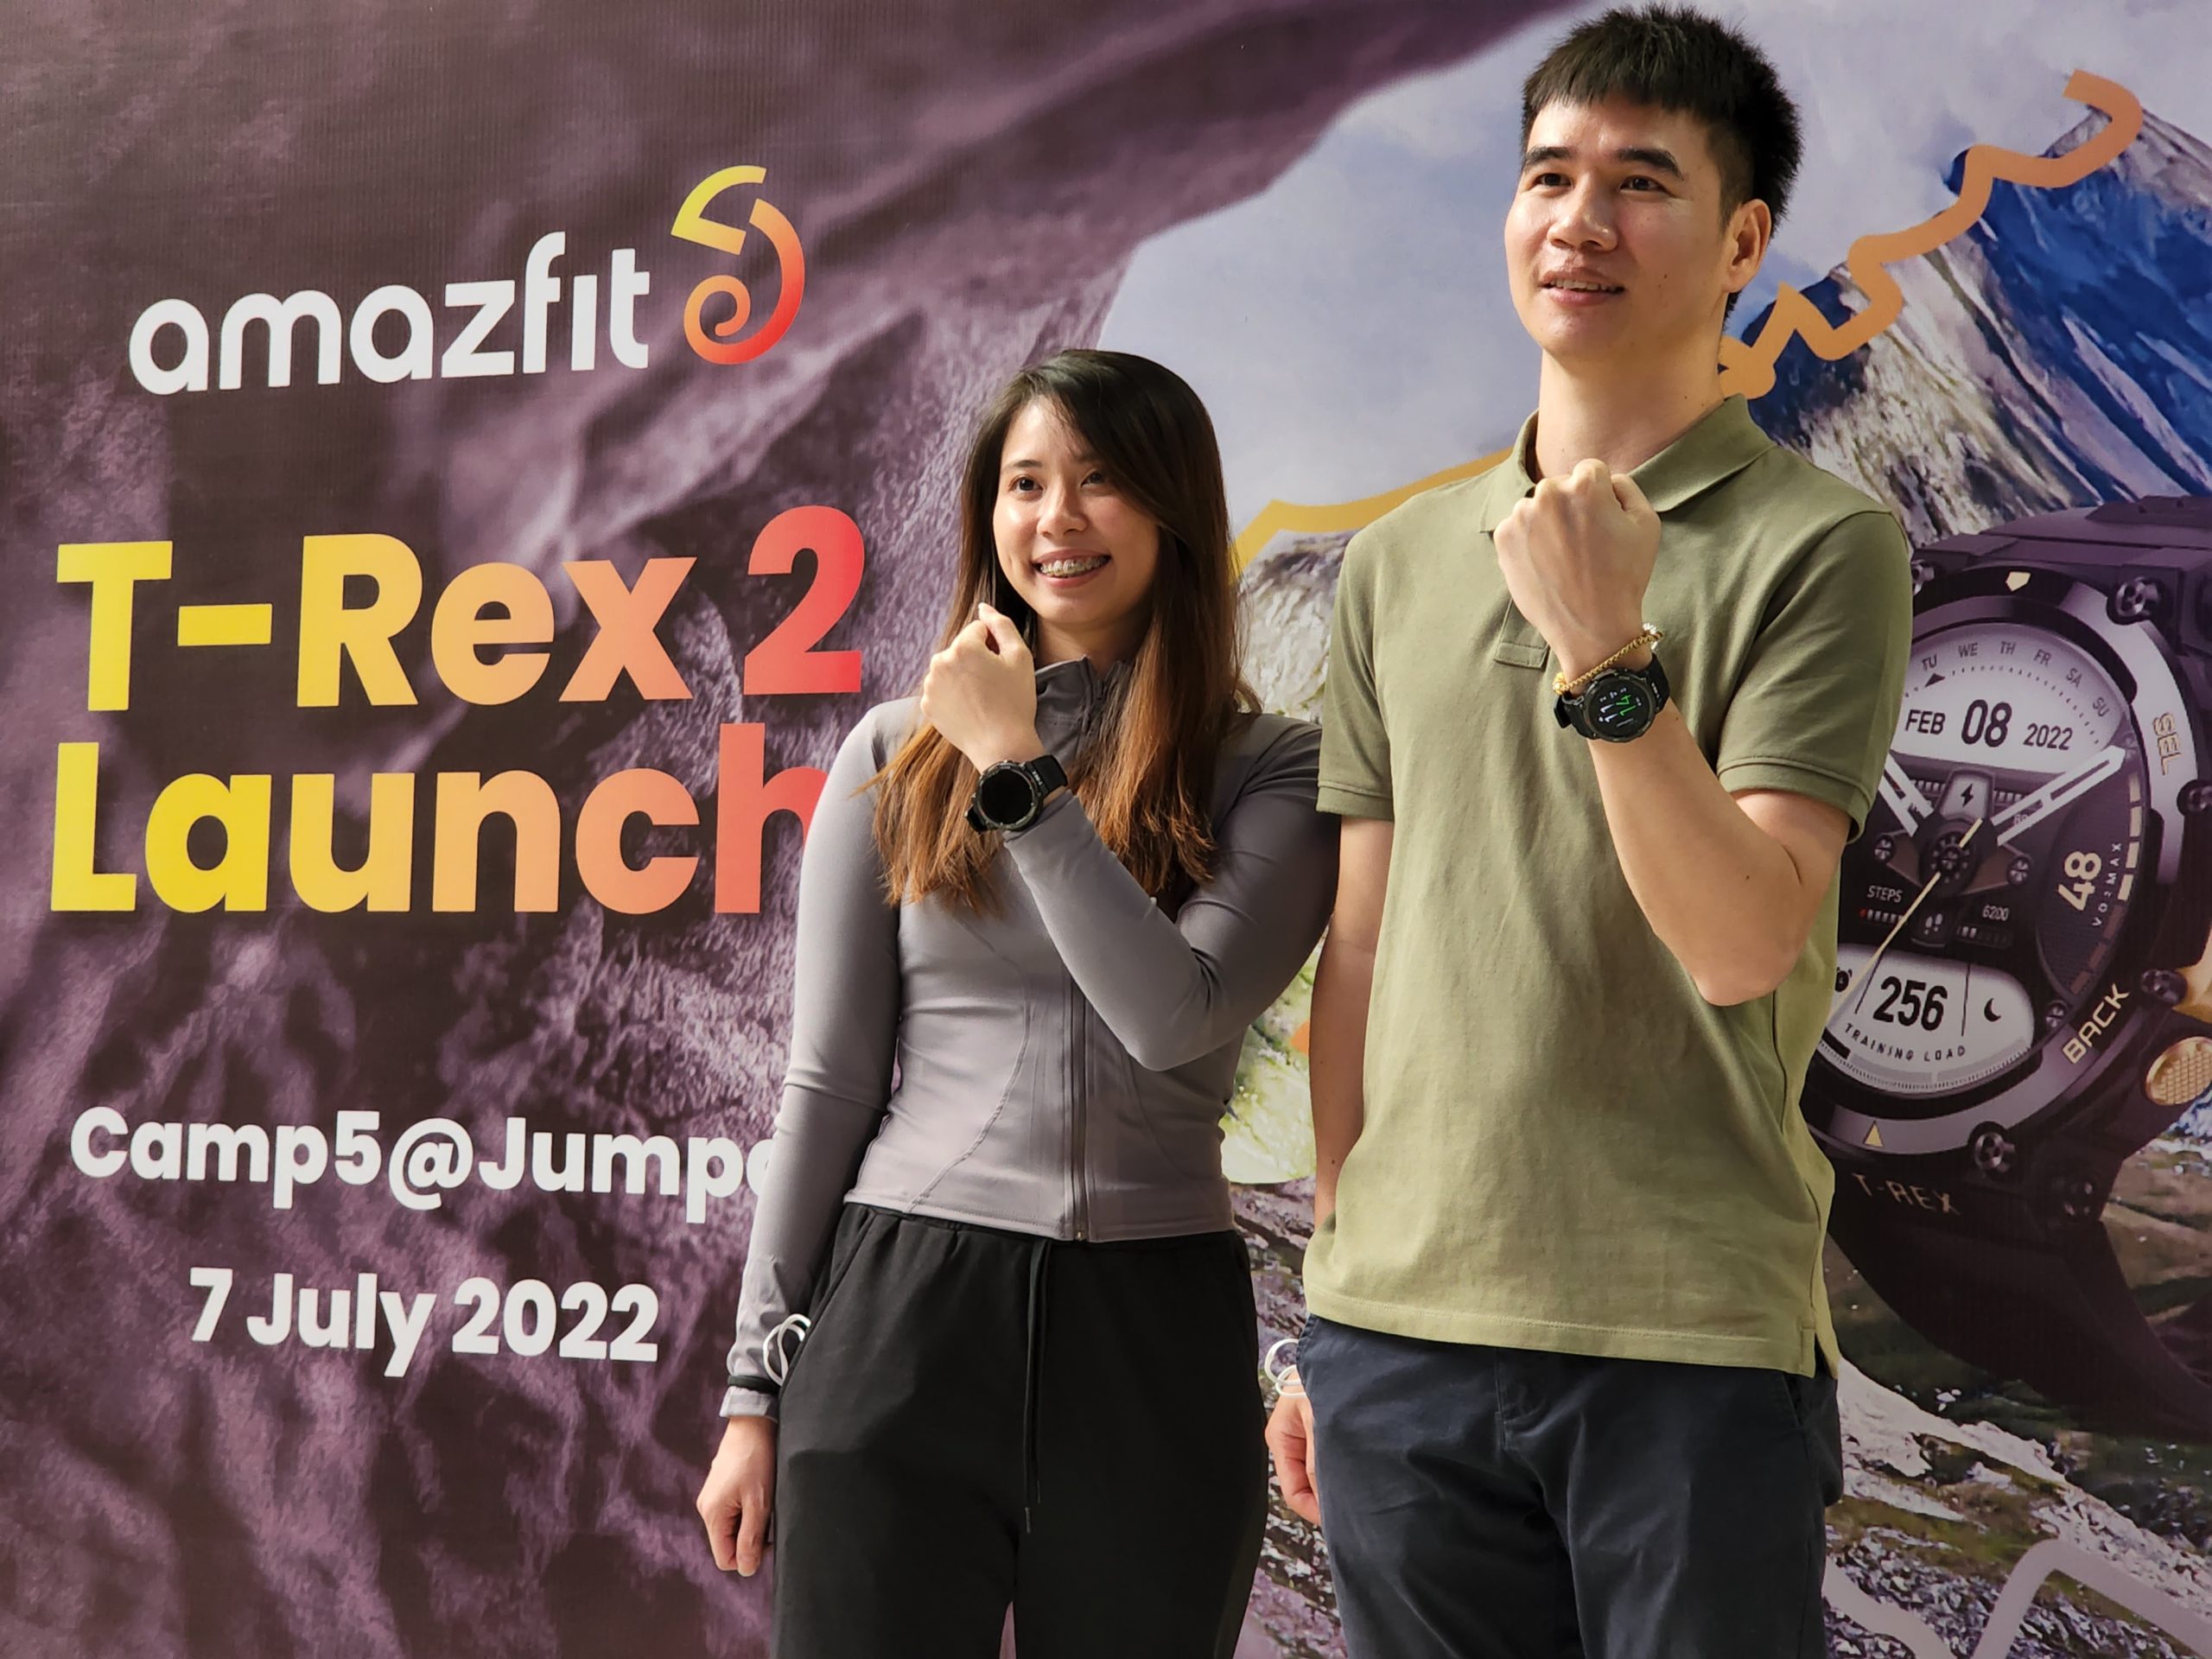 Jam pintar lasak Amazfit T-Rex 2 kini rasmi di Malaysia pada harga RM 799 sahaja 11